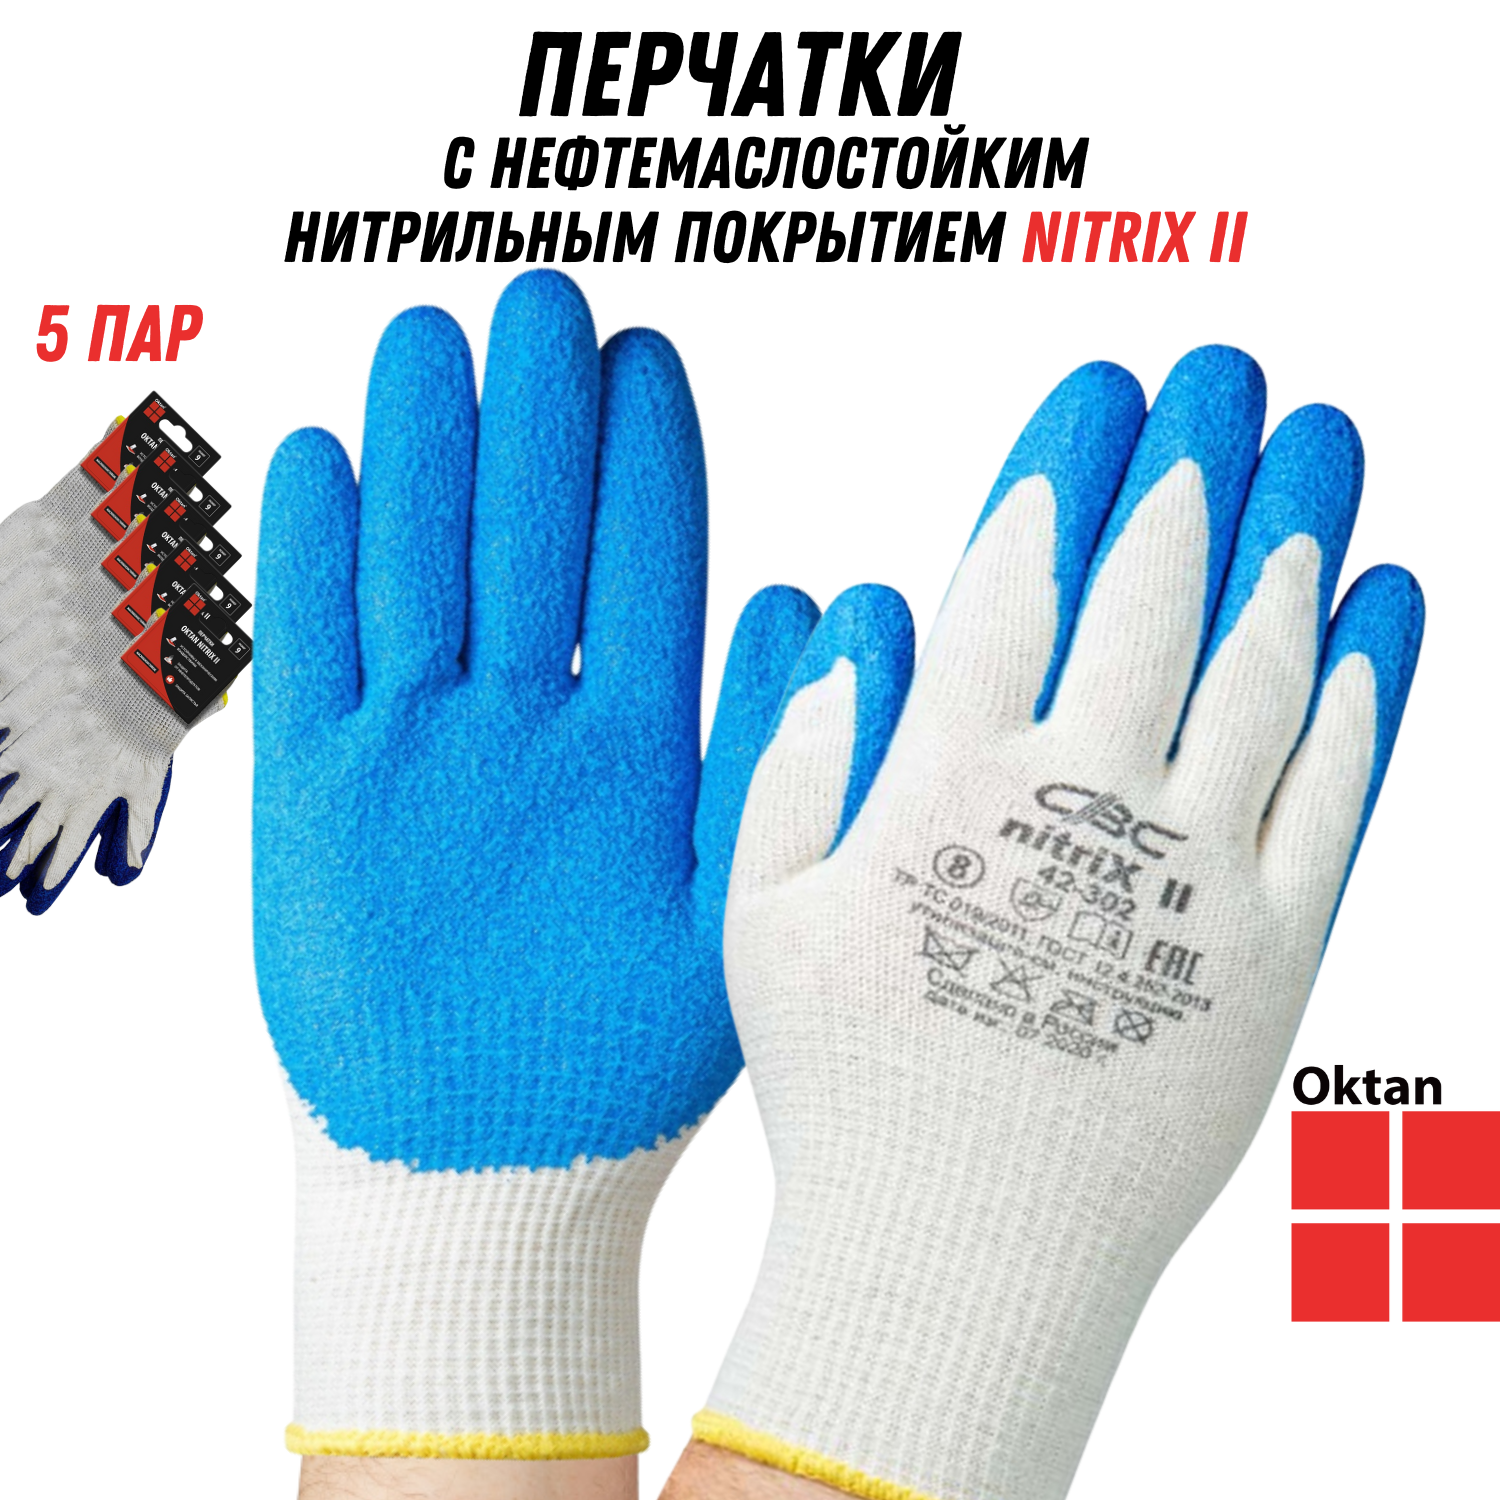 Перчатки рабочие Oktan NITRIX II А5-01-21-05-ММ белые с синим размер 9, 5 пар перчатки рабочие строительные усиленные защитные монтажника 67997